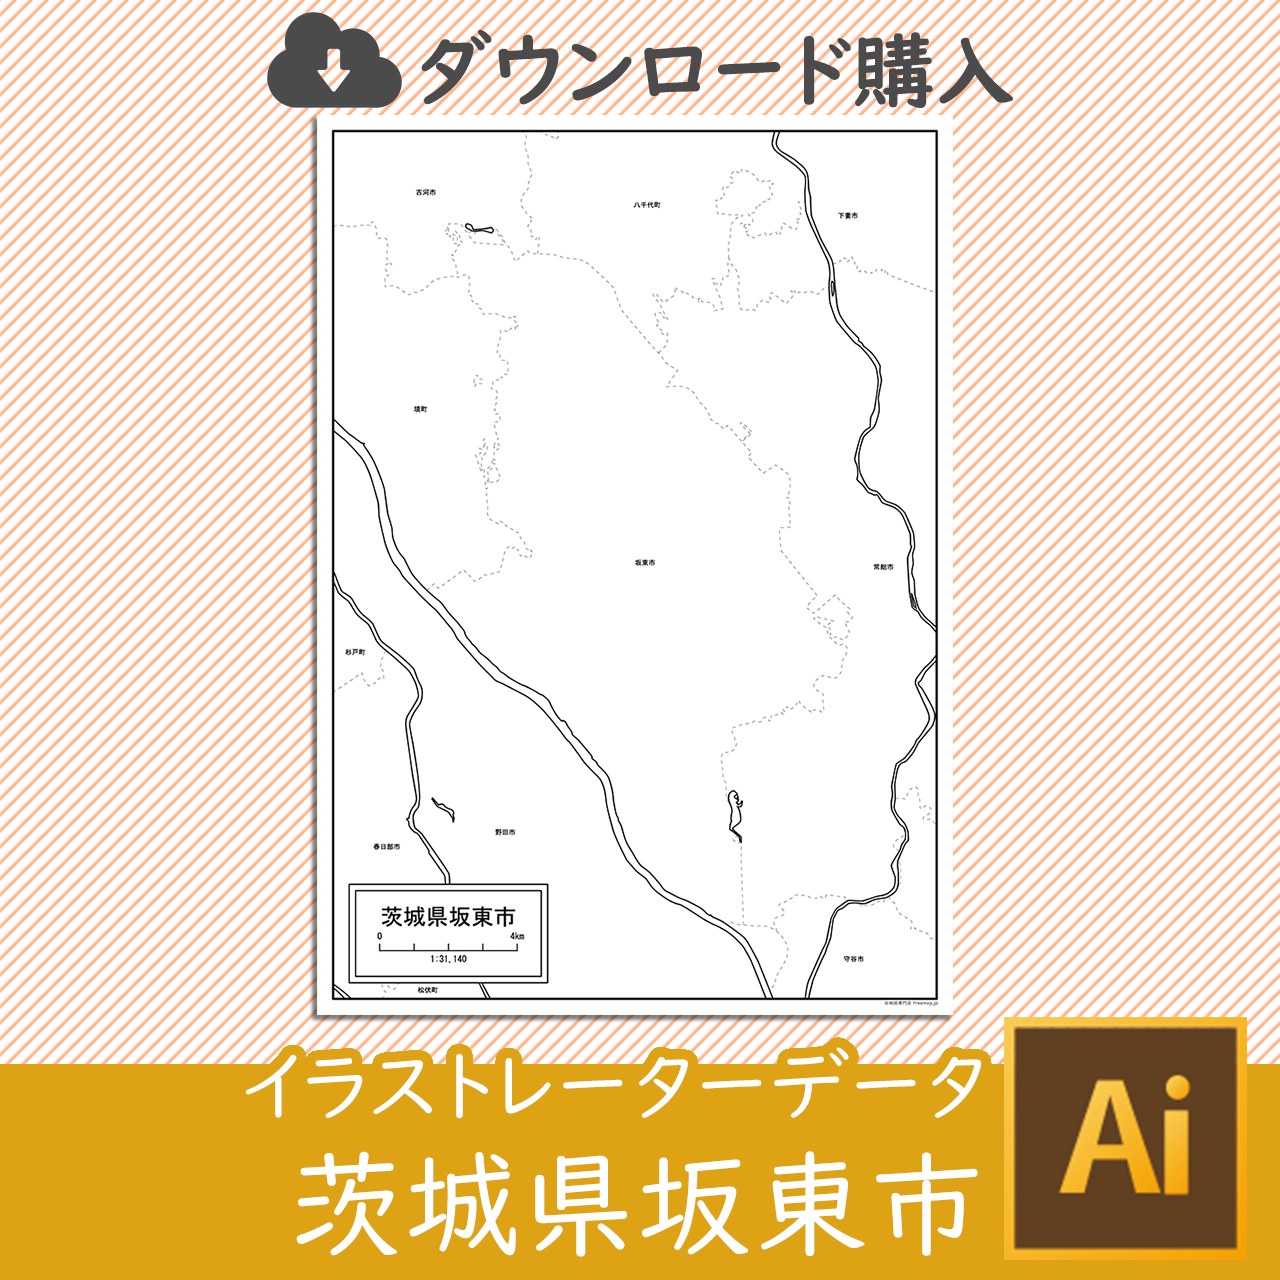 坂東市のaiデータのサムネイル画像